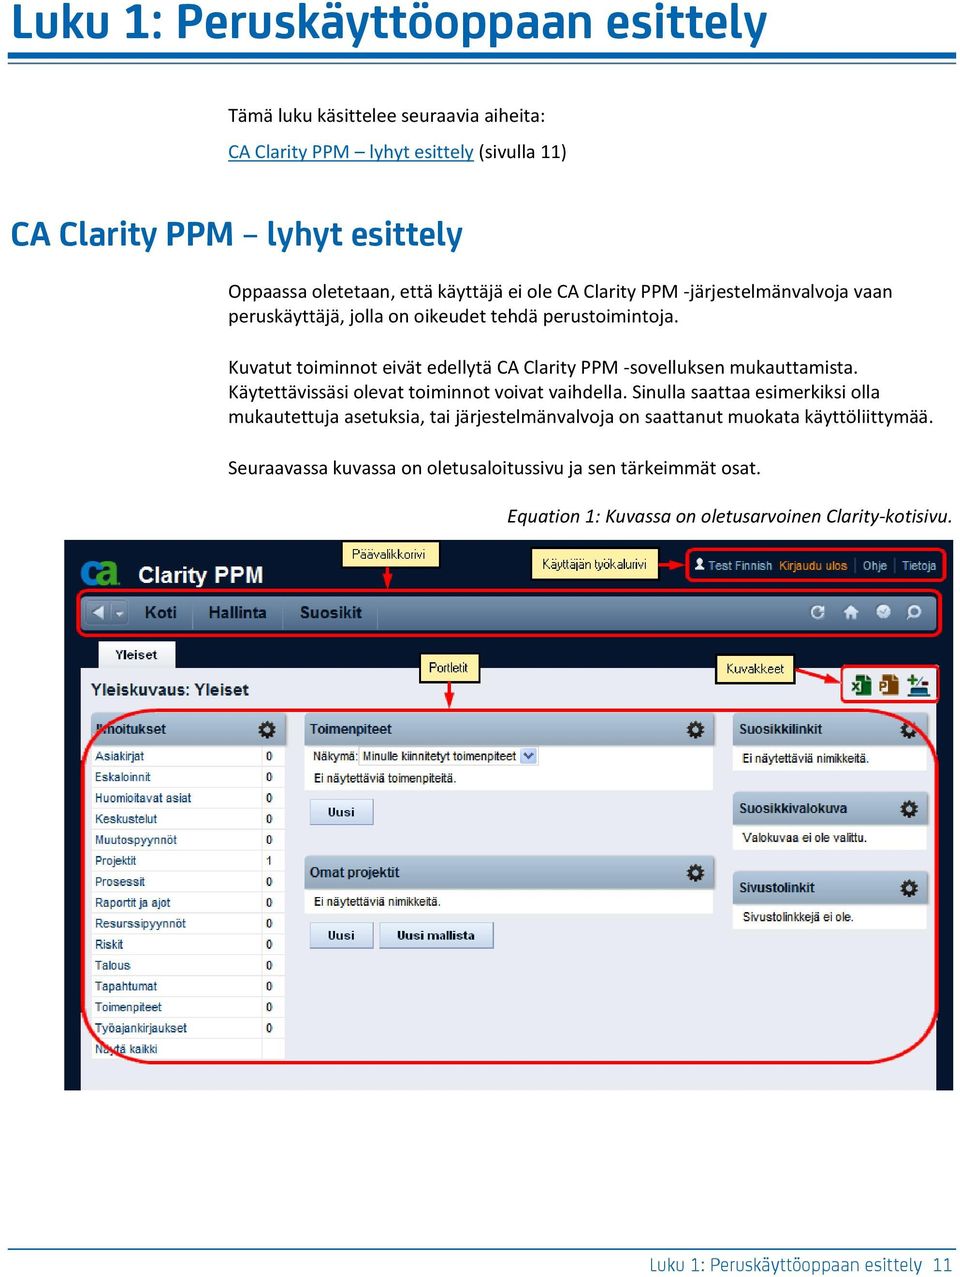 Kuvatut toiminnot eivät edellytä CA Clarity PPM -sovelluksen mukauttamista. Käytettävissäsi olevat toiminnot voivat vaihdella.